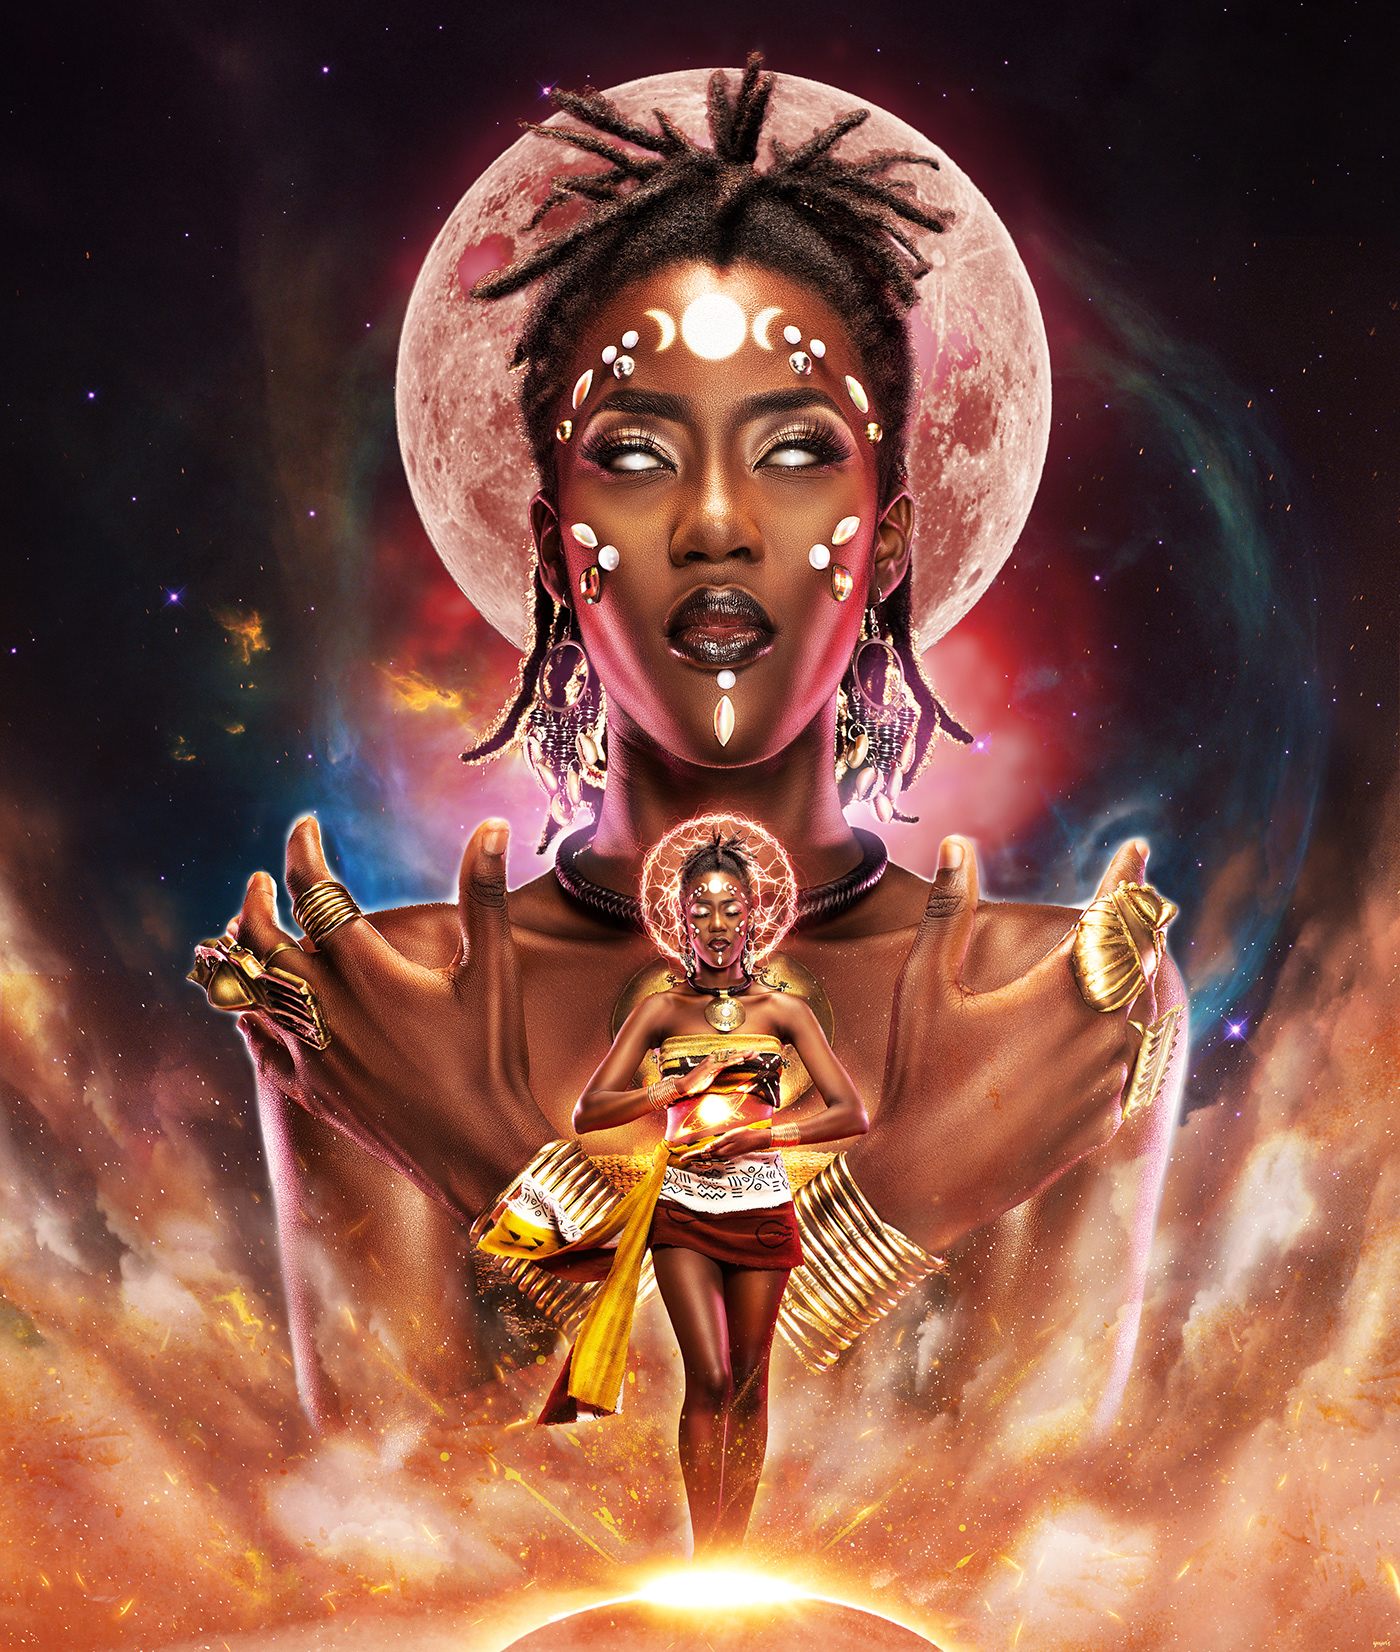 africanism blackartist Character design  concept art Digital Art  spirituality vodou